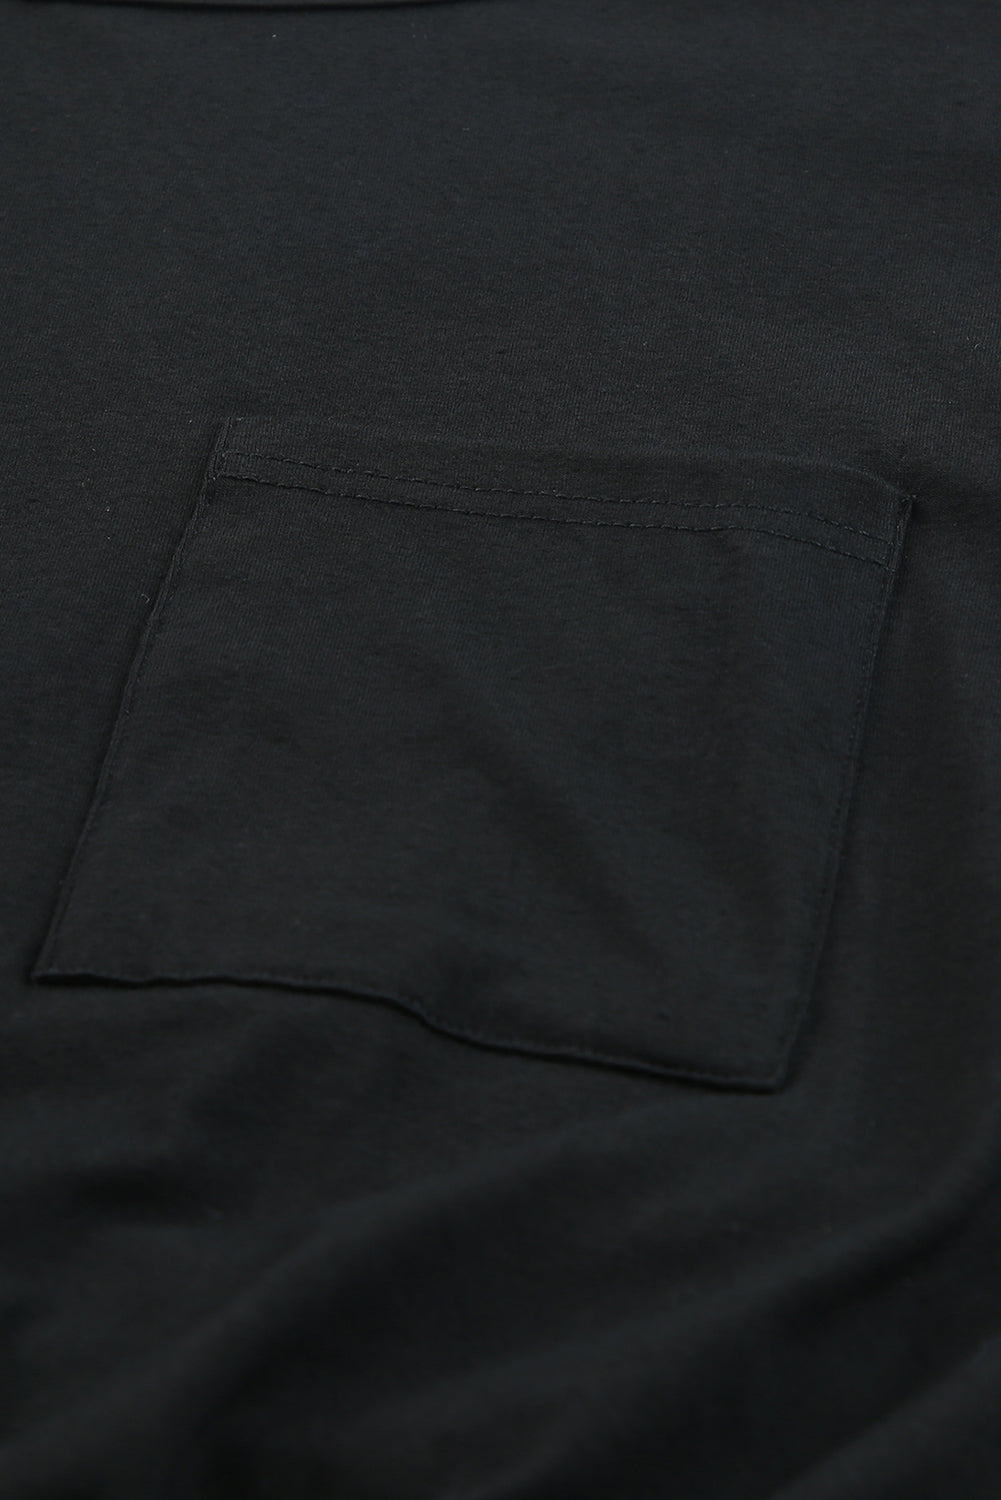 Schwarzes, figurbetontes, lockeres T-Shirt-Minikleid mit Brusttasche und Rüschen